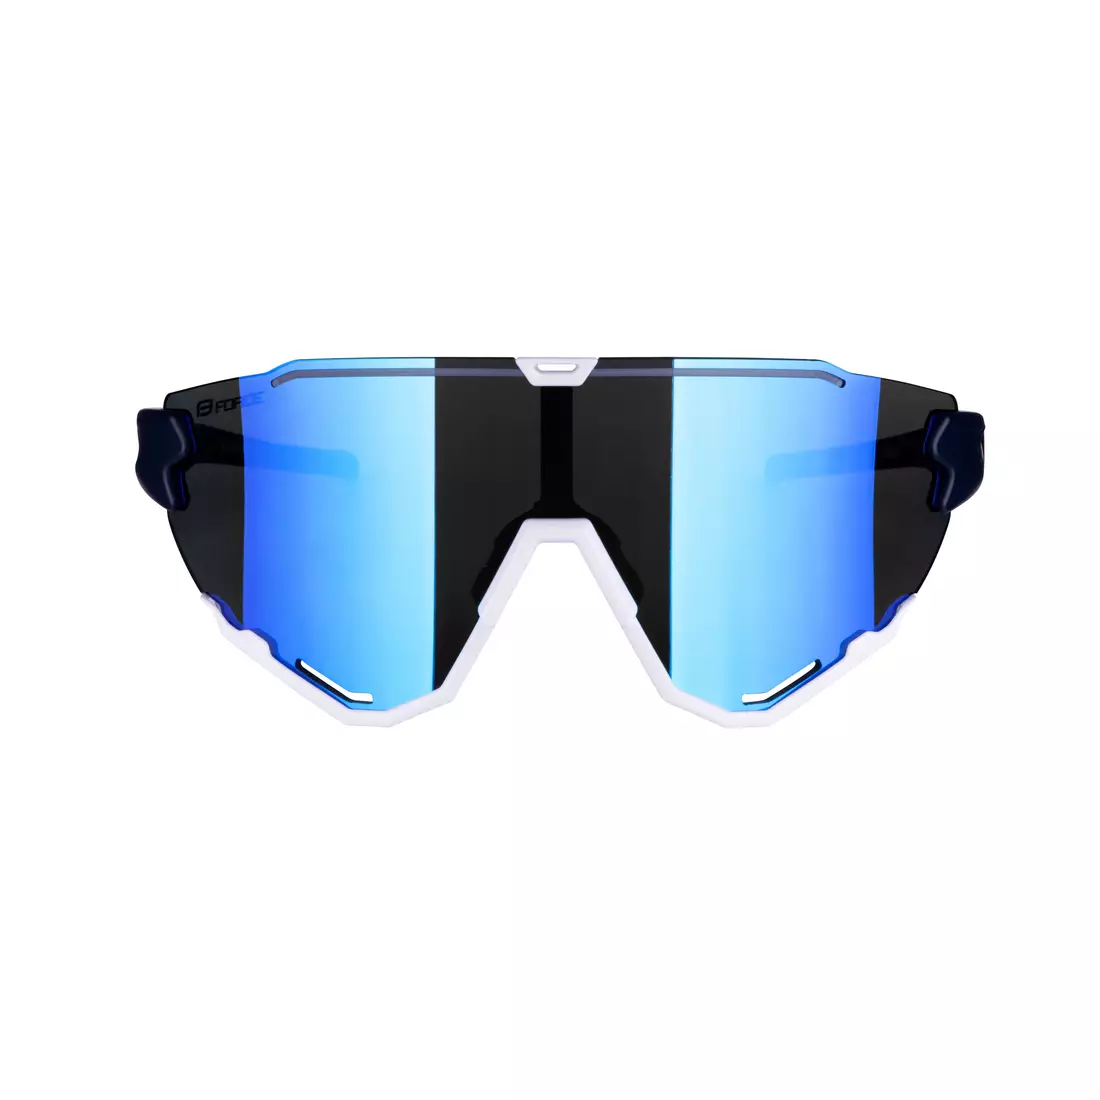 FORCE ochelari de ciclism / sport CREED albastru si alb, 91183